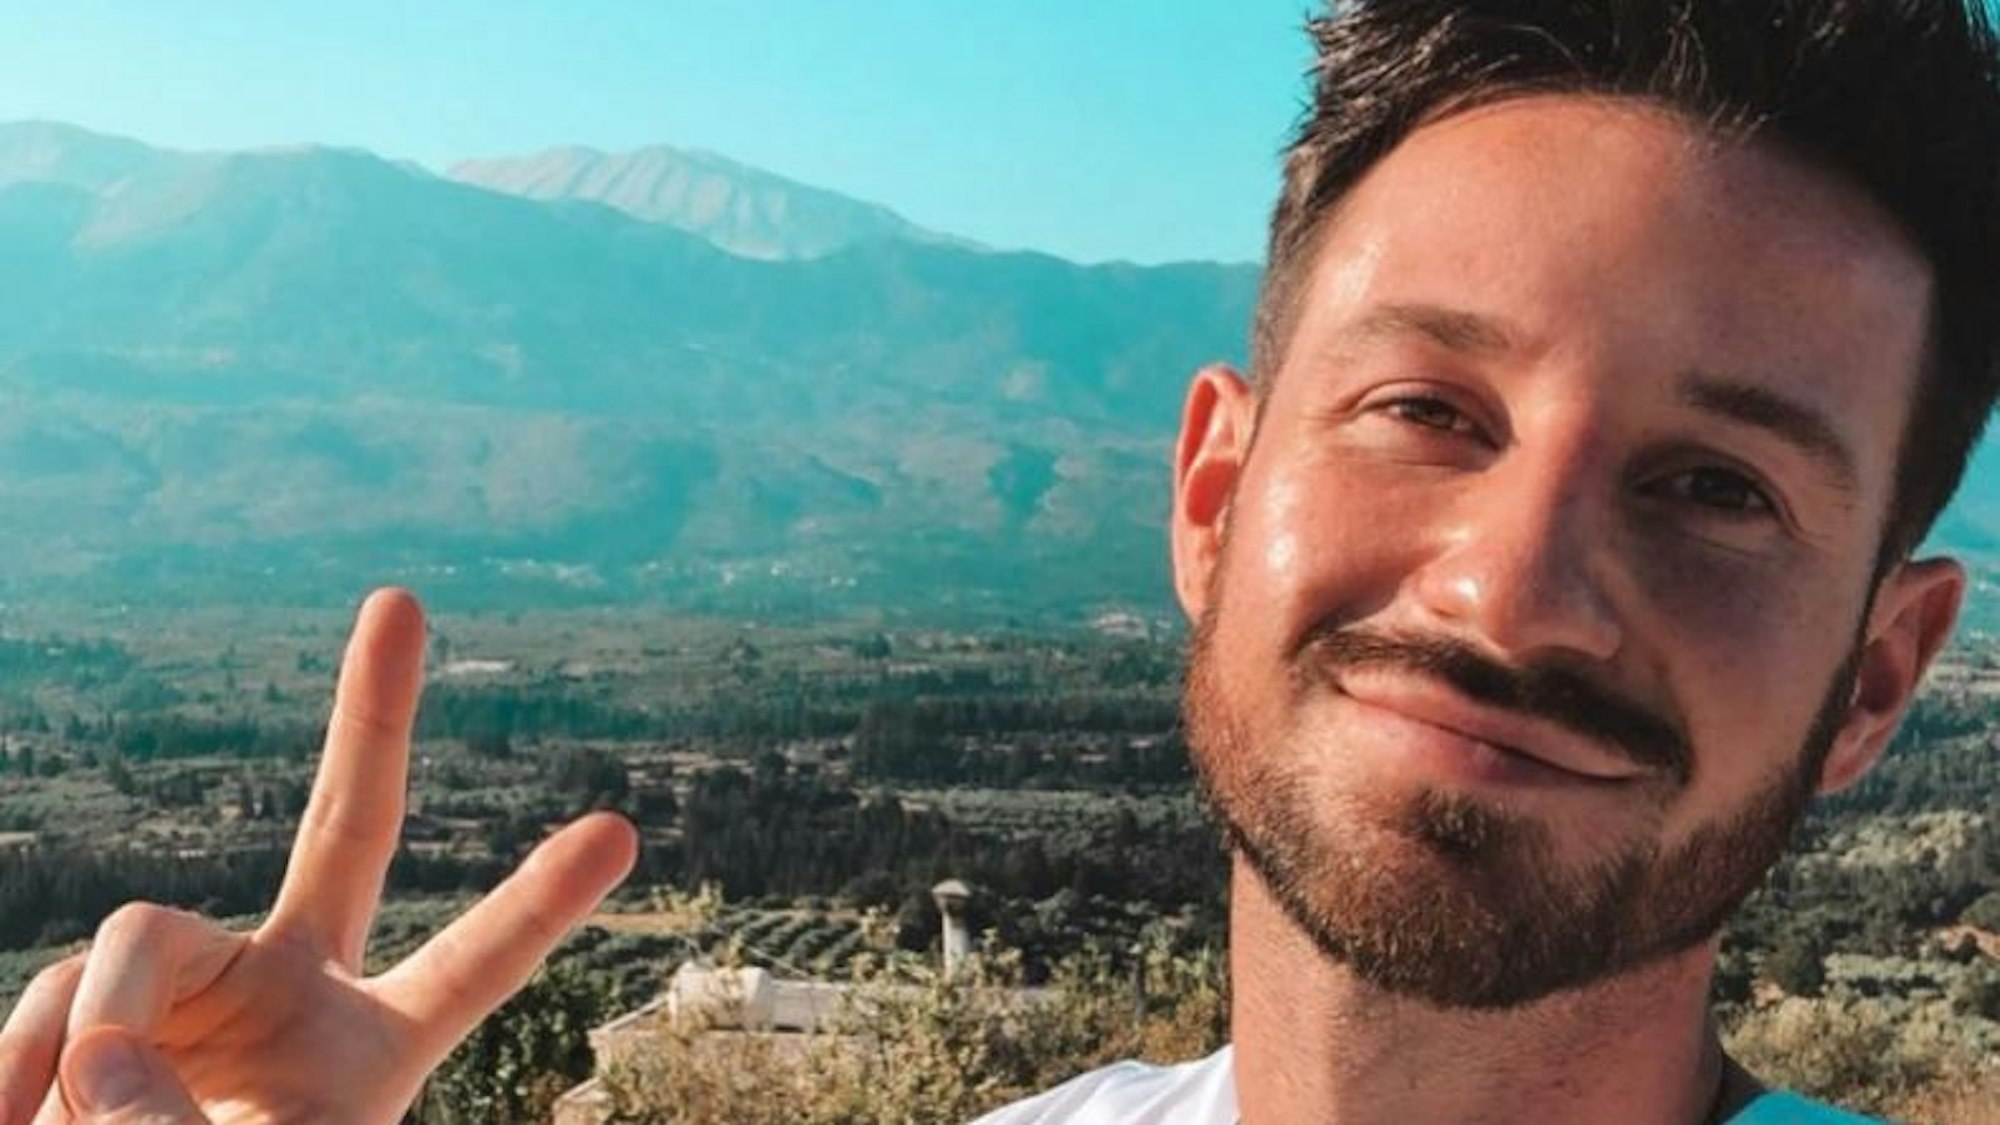 Ex-„Prince Charming“ Alexander Schäfer ist wieder vergeben. Das Selfie hat der Influencer am 22. Oktober 2020 auf seinem Instagram-Kanal hochgeladen.